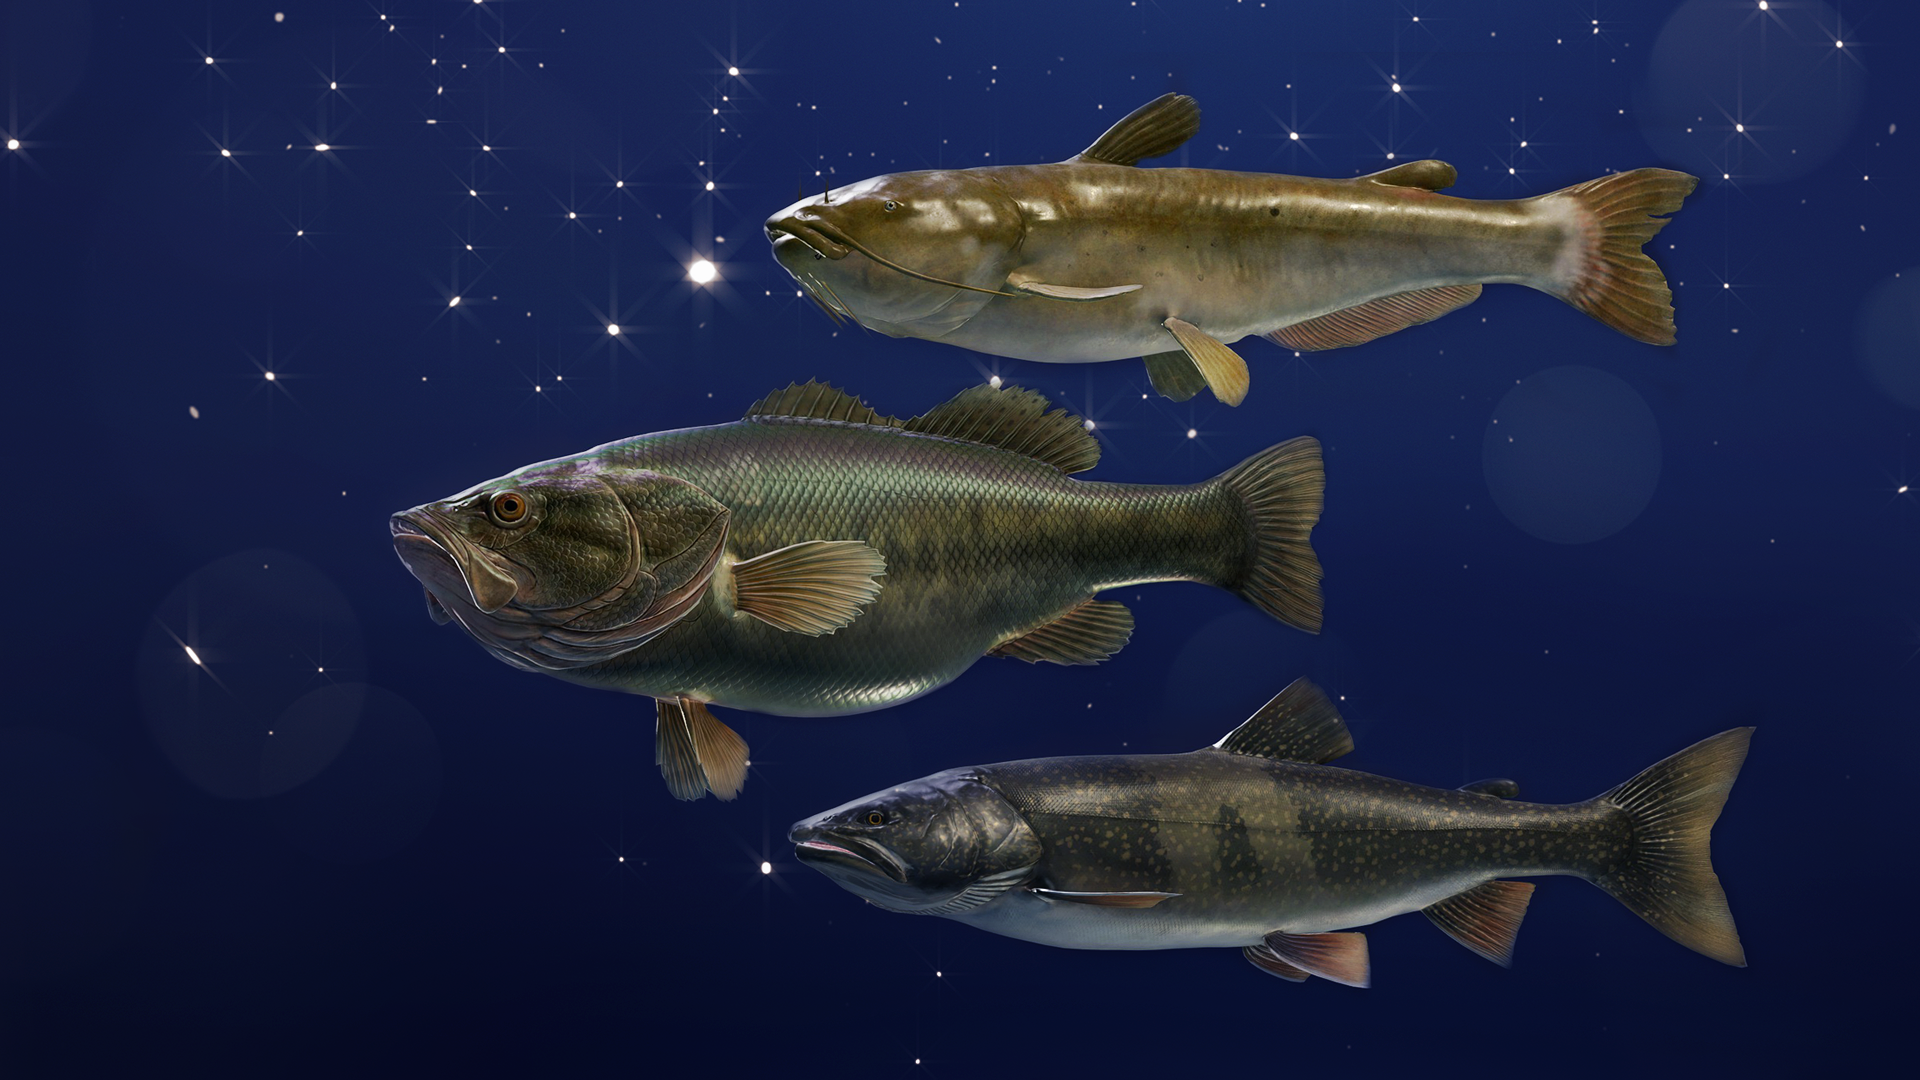 The legendary fish of The Angler's Golden Ridge Reserve.